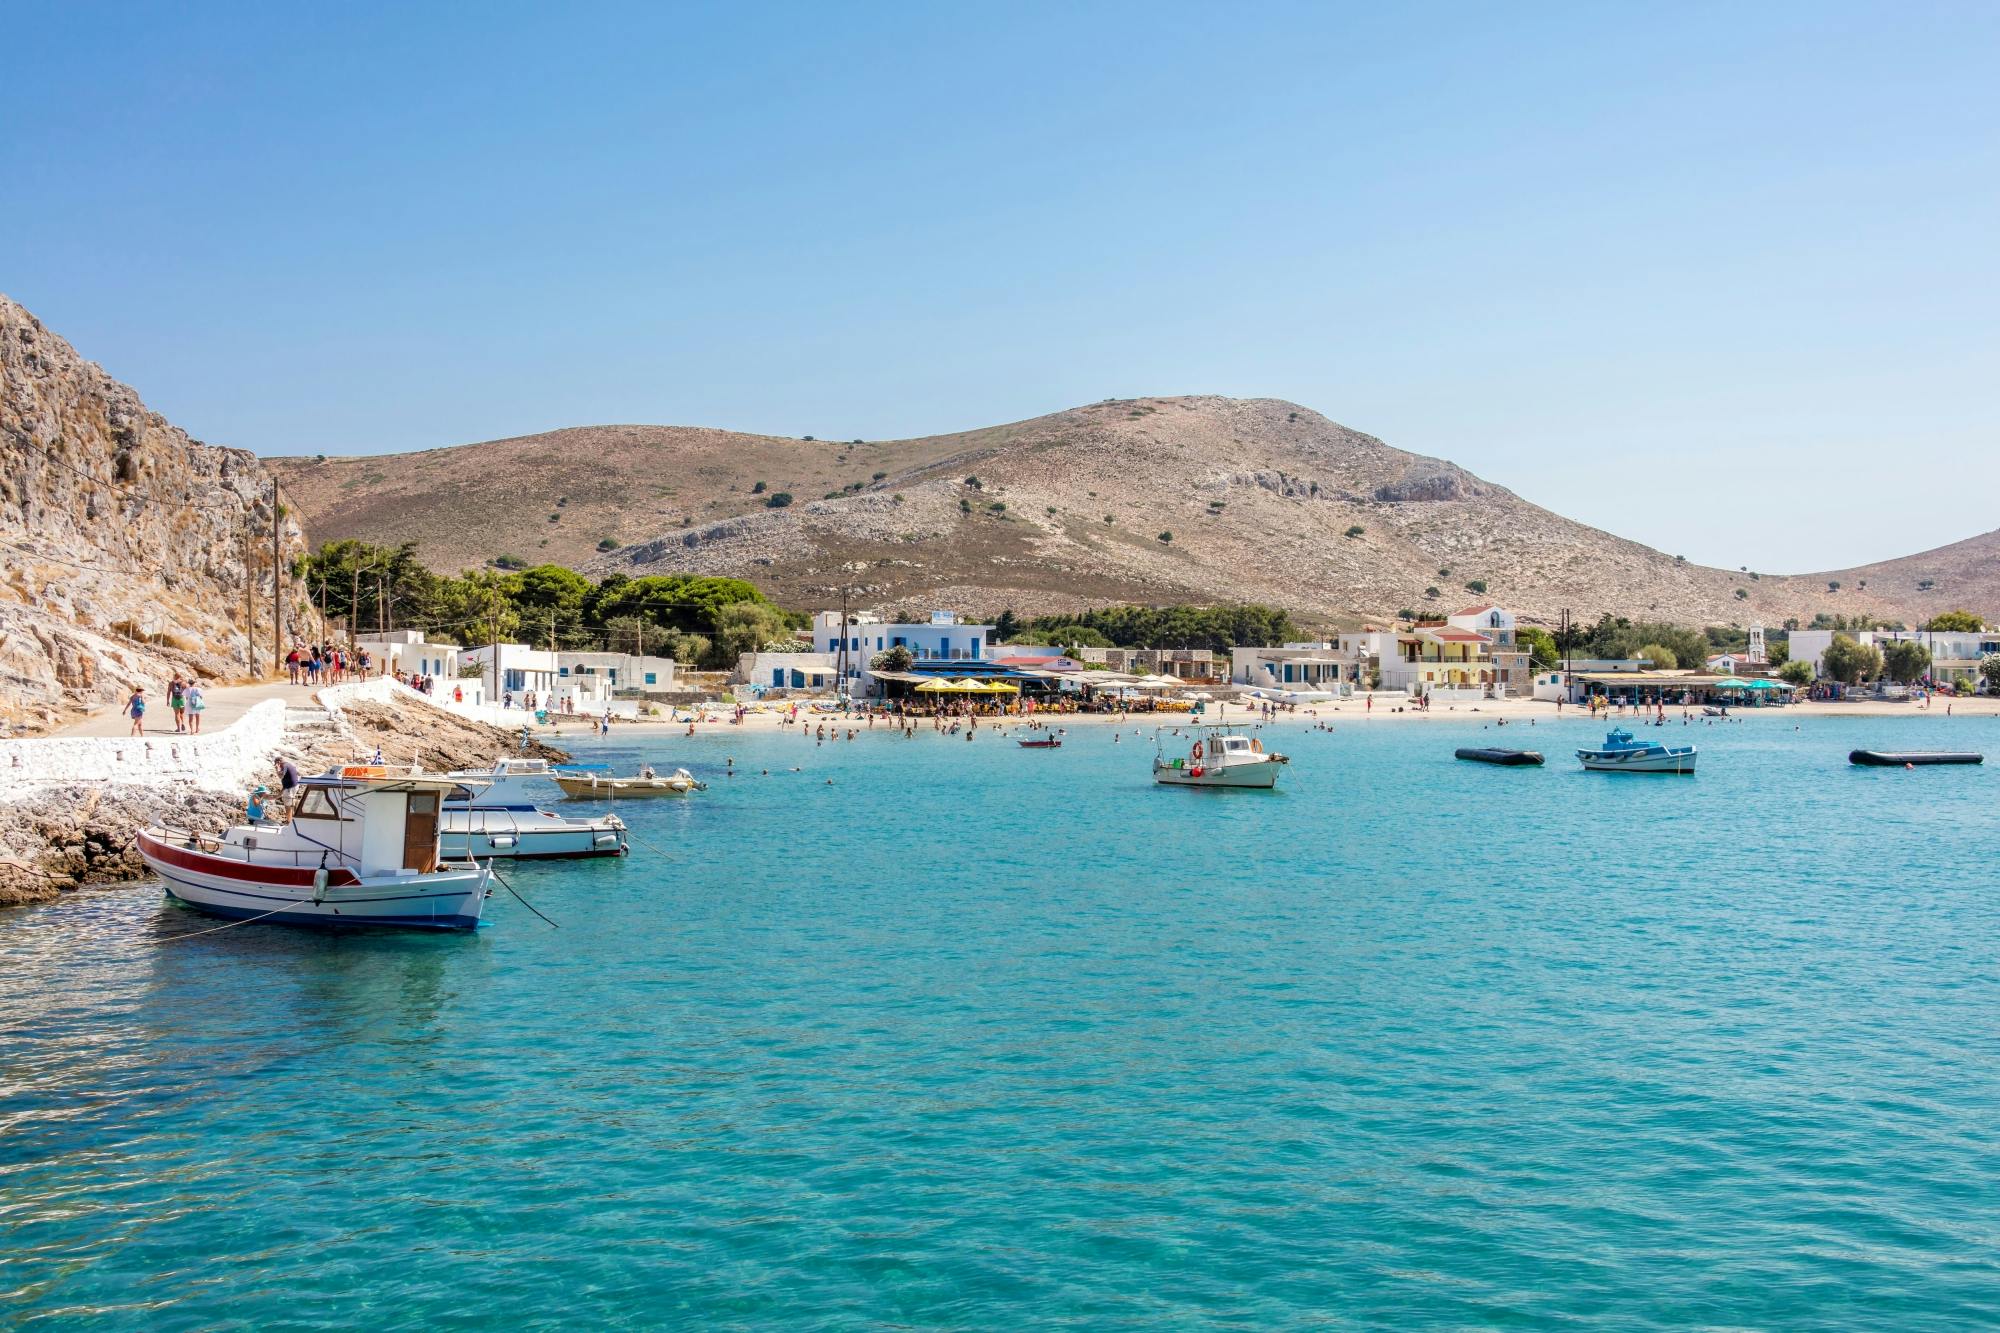 Croisière en mer Égée avec déjeuner sur l'île de Kalymnos